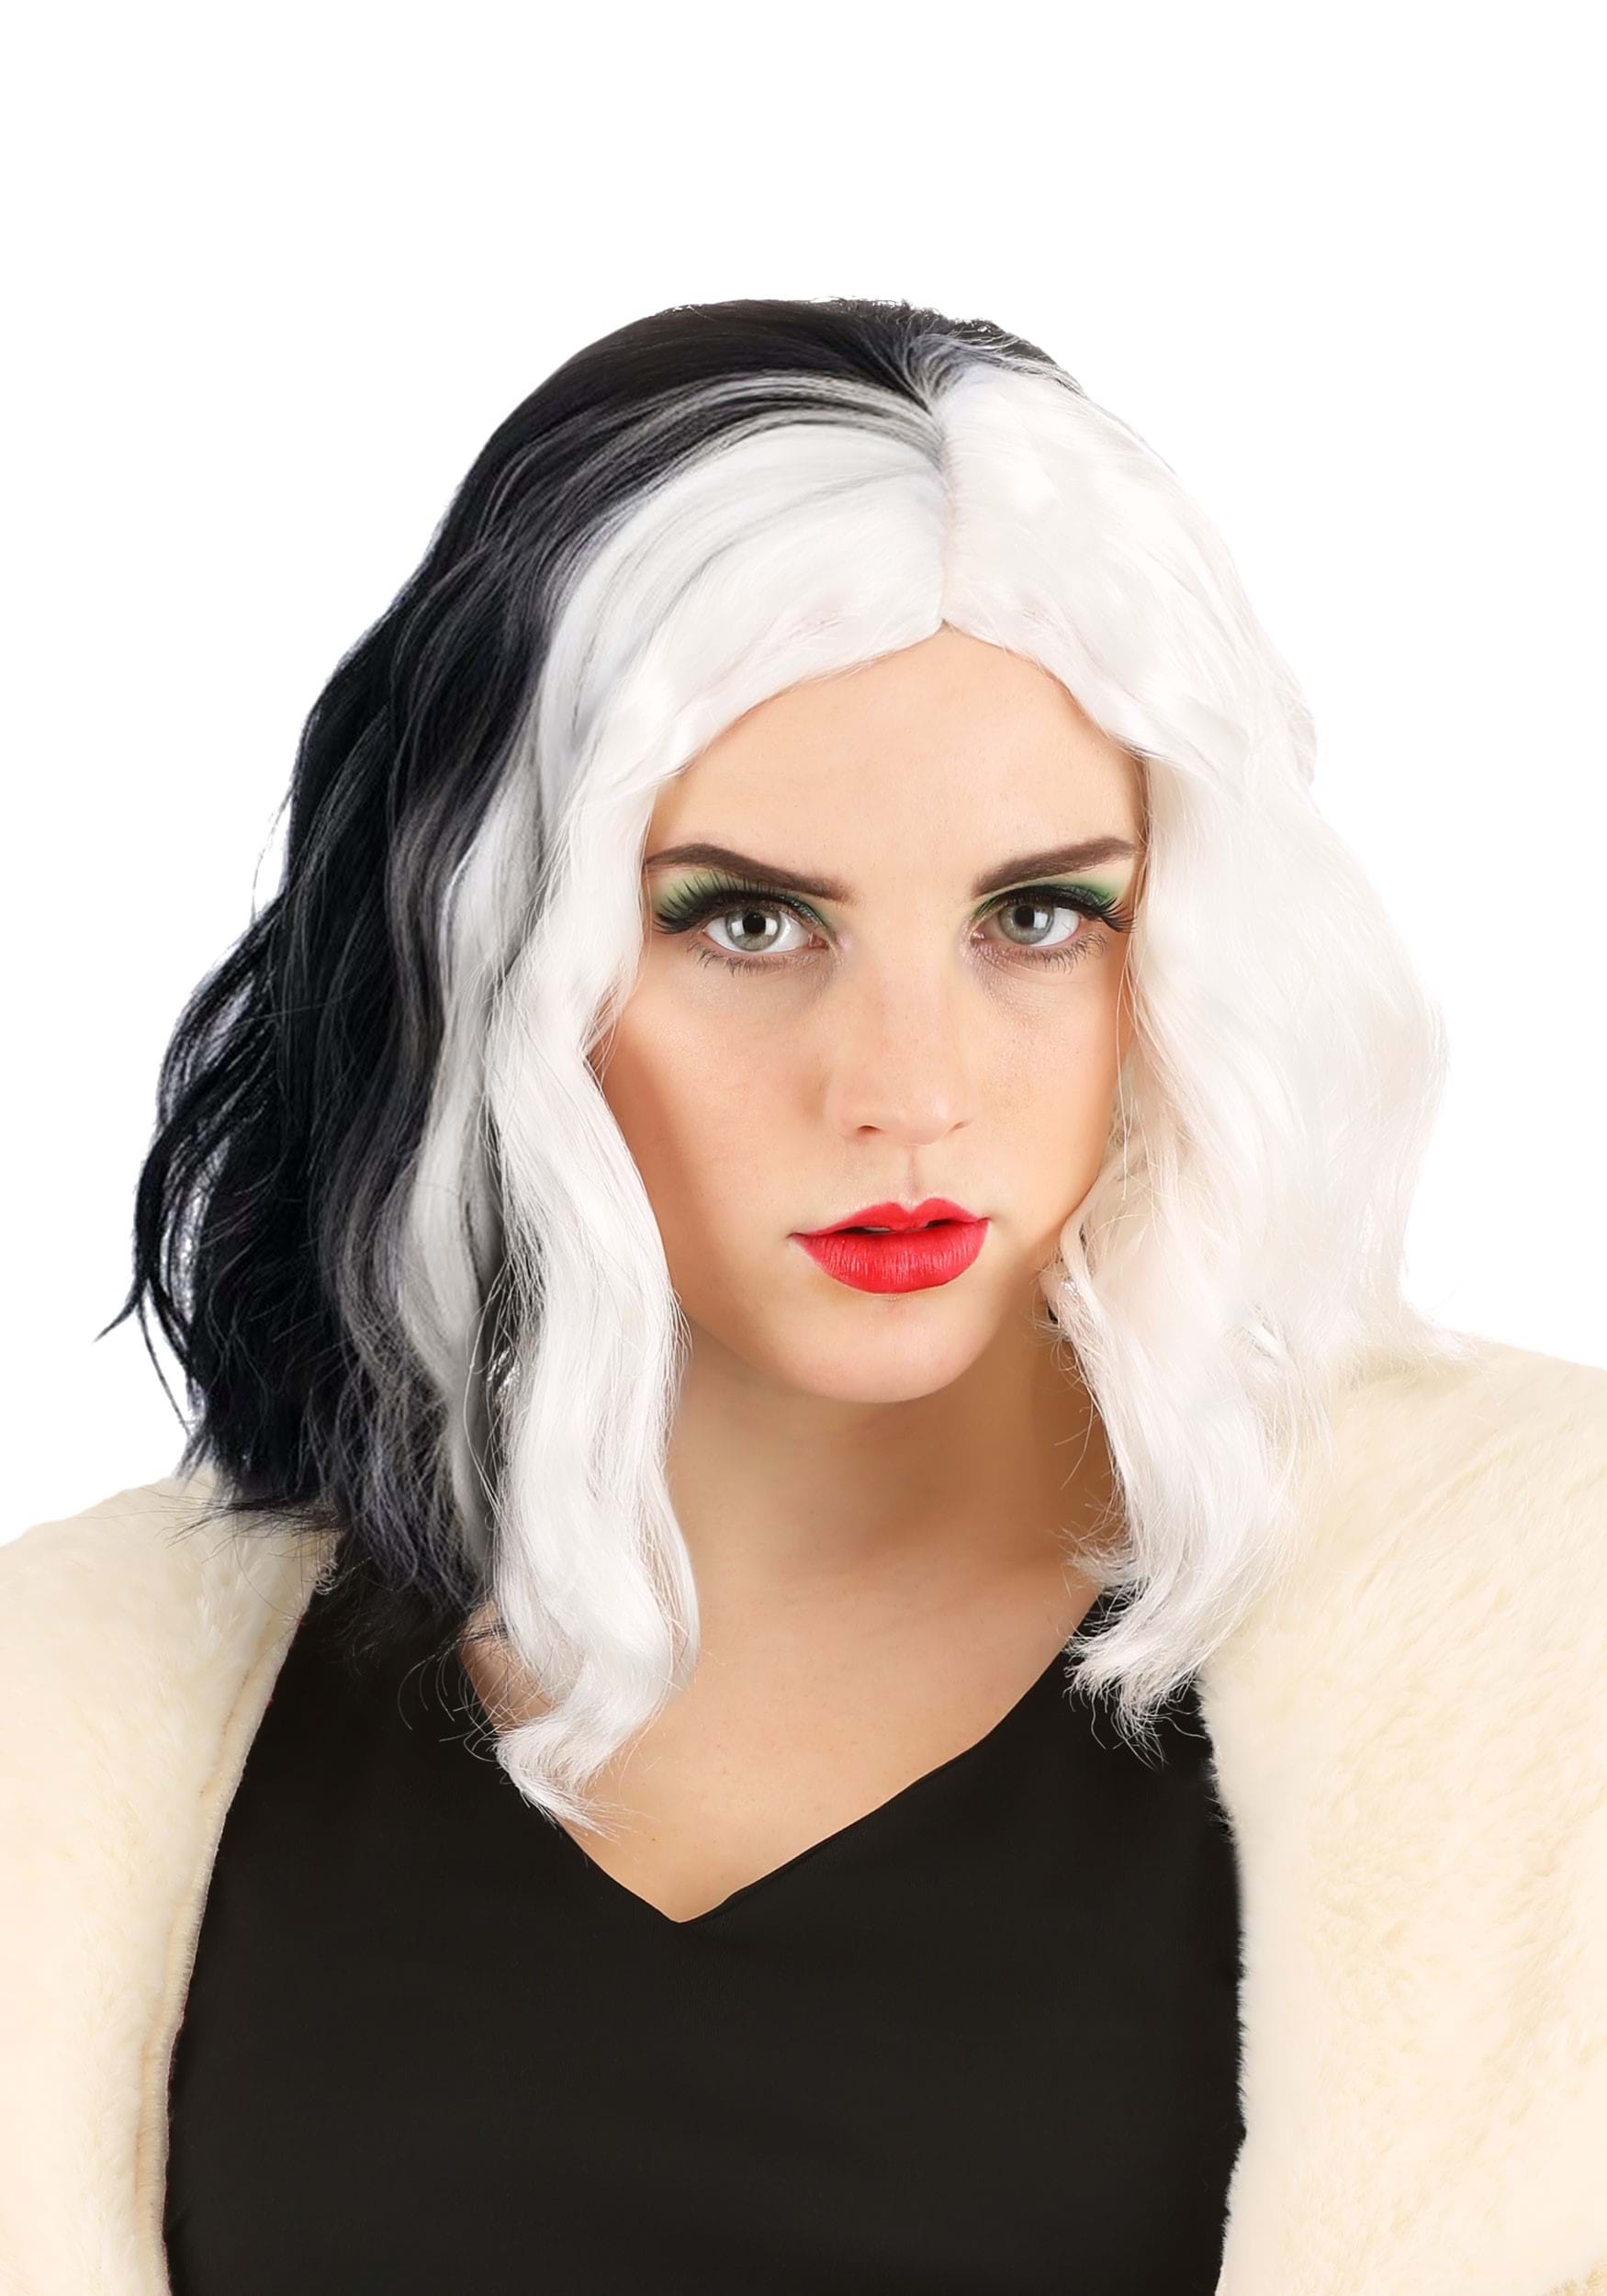 101 Dalmatians Cruella De Vil Trendy Wig | Disney Costume Accessories